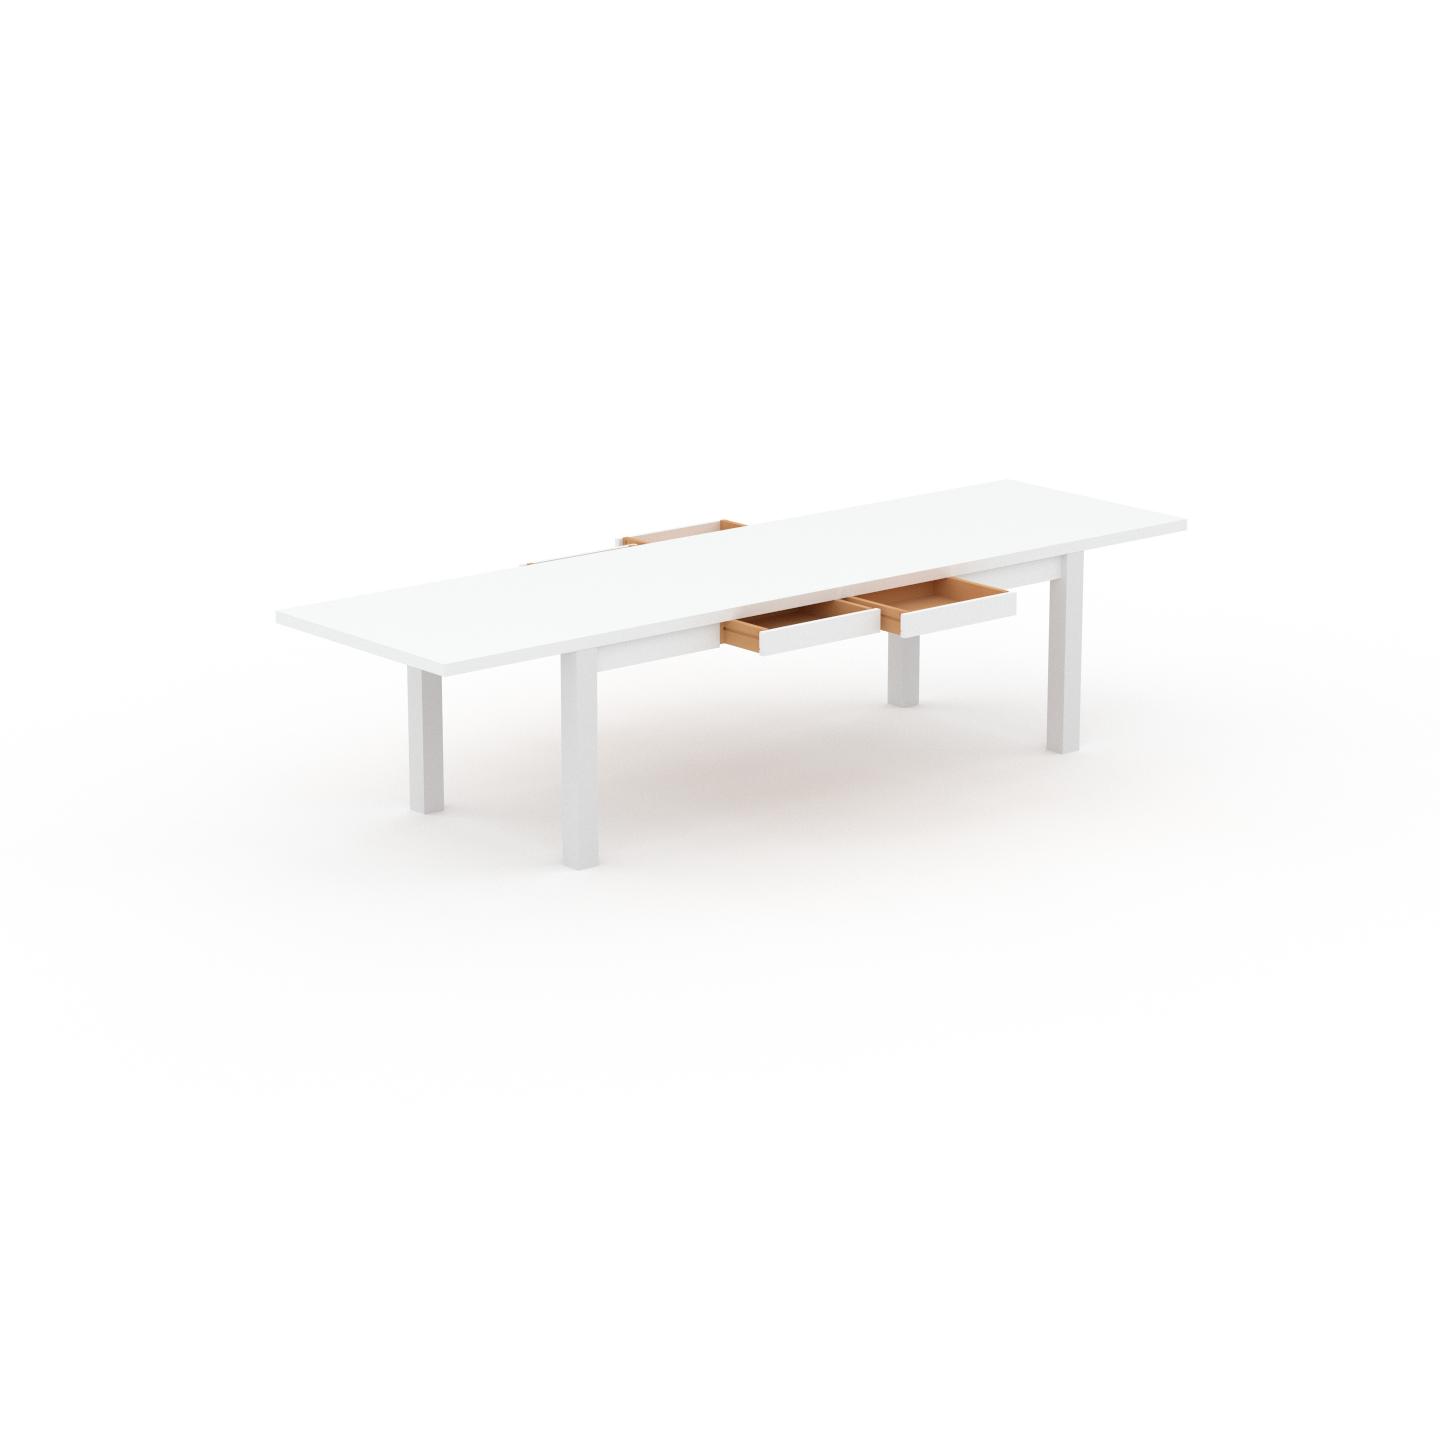 MYCS Schreibtisch Massivholz Weiß - Massivholz-Schreibtisch: mit 4 Schublade/n & Tischrahmen - Hochwertige Materialien - 320 x 76 x 90 cm, konfigurierbar